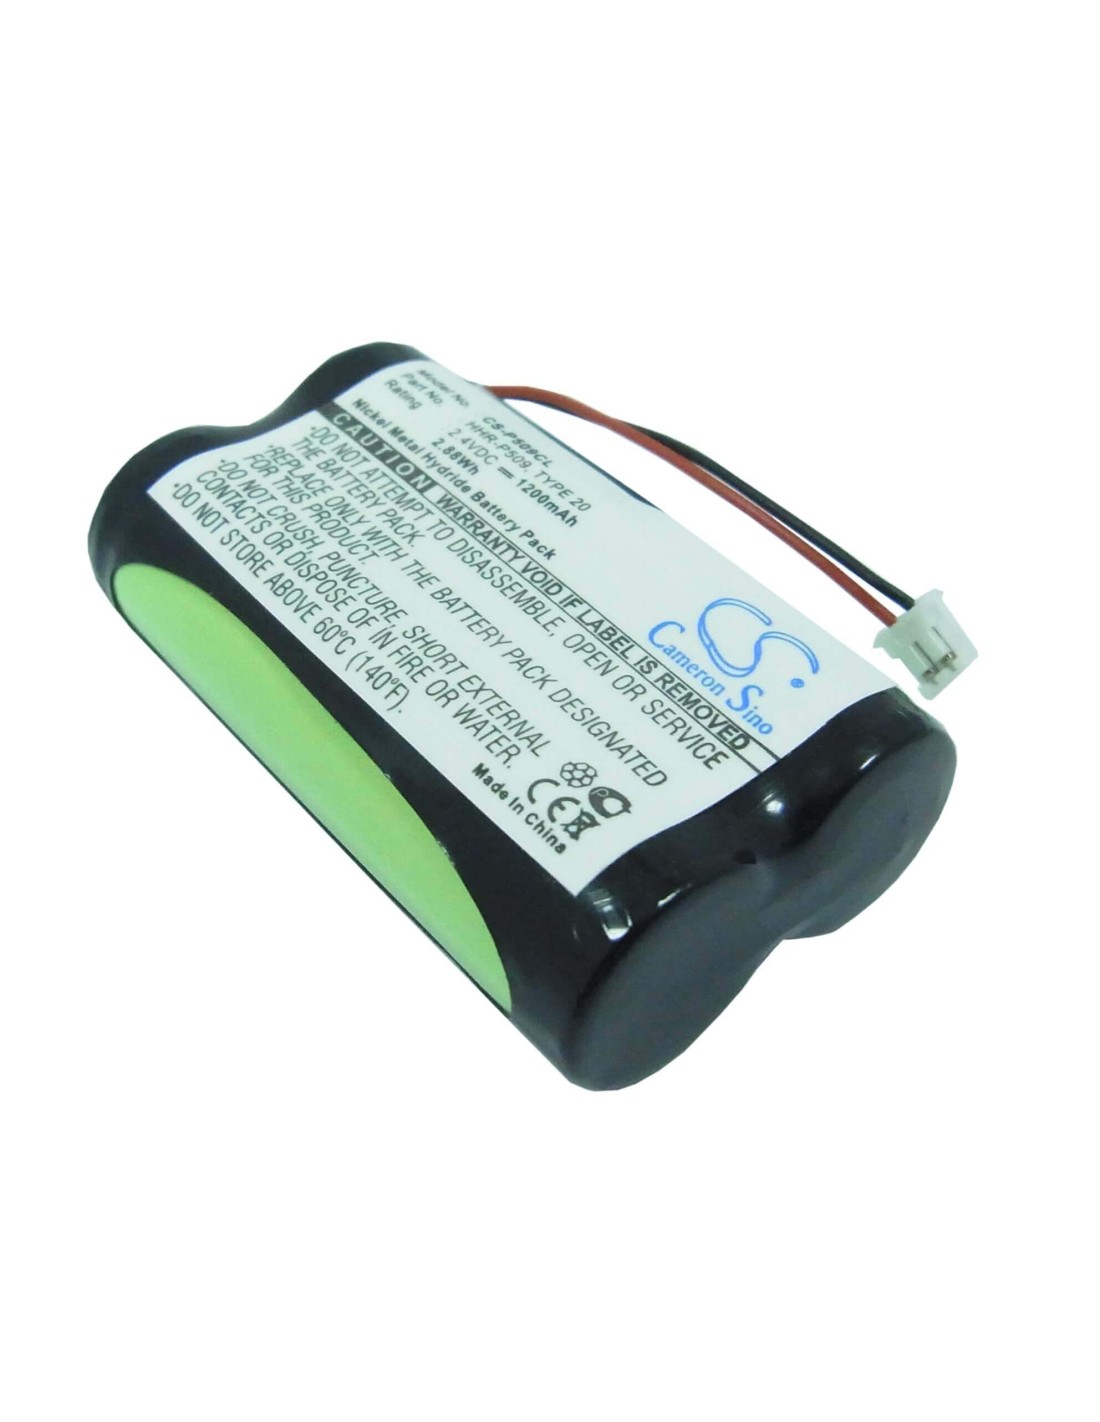 Battery for Gp, 60aas3bmx, Panasonic, Kx-tg2650n, Kx-tg2670, 2.4V, 1200mAh - 2.88Wh